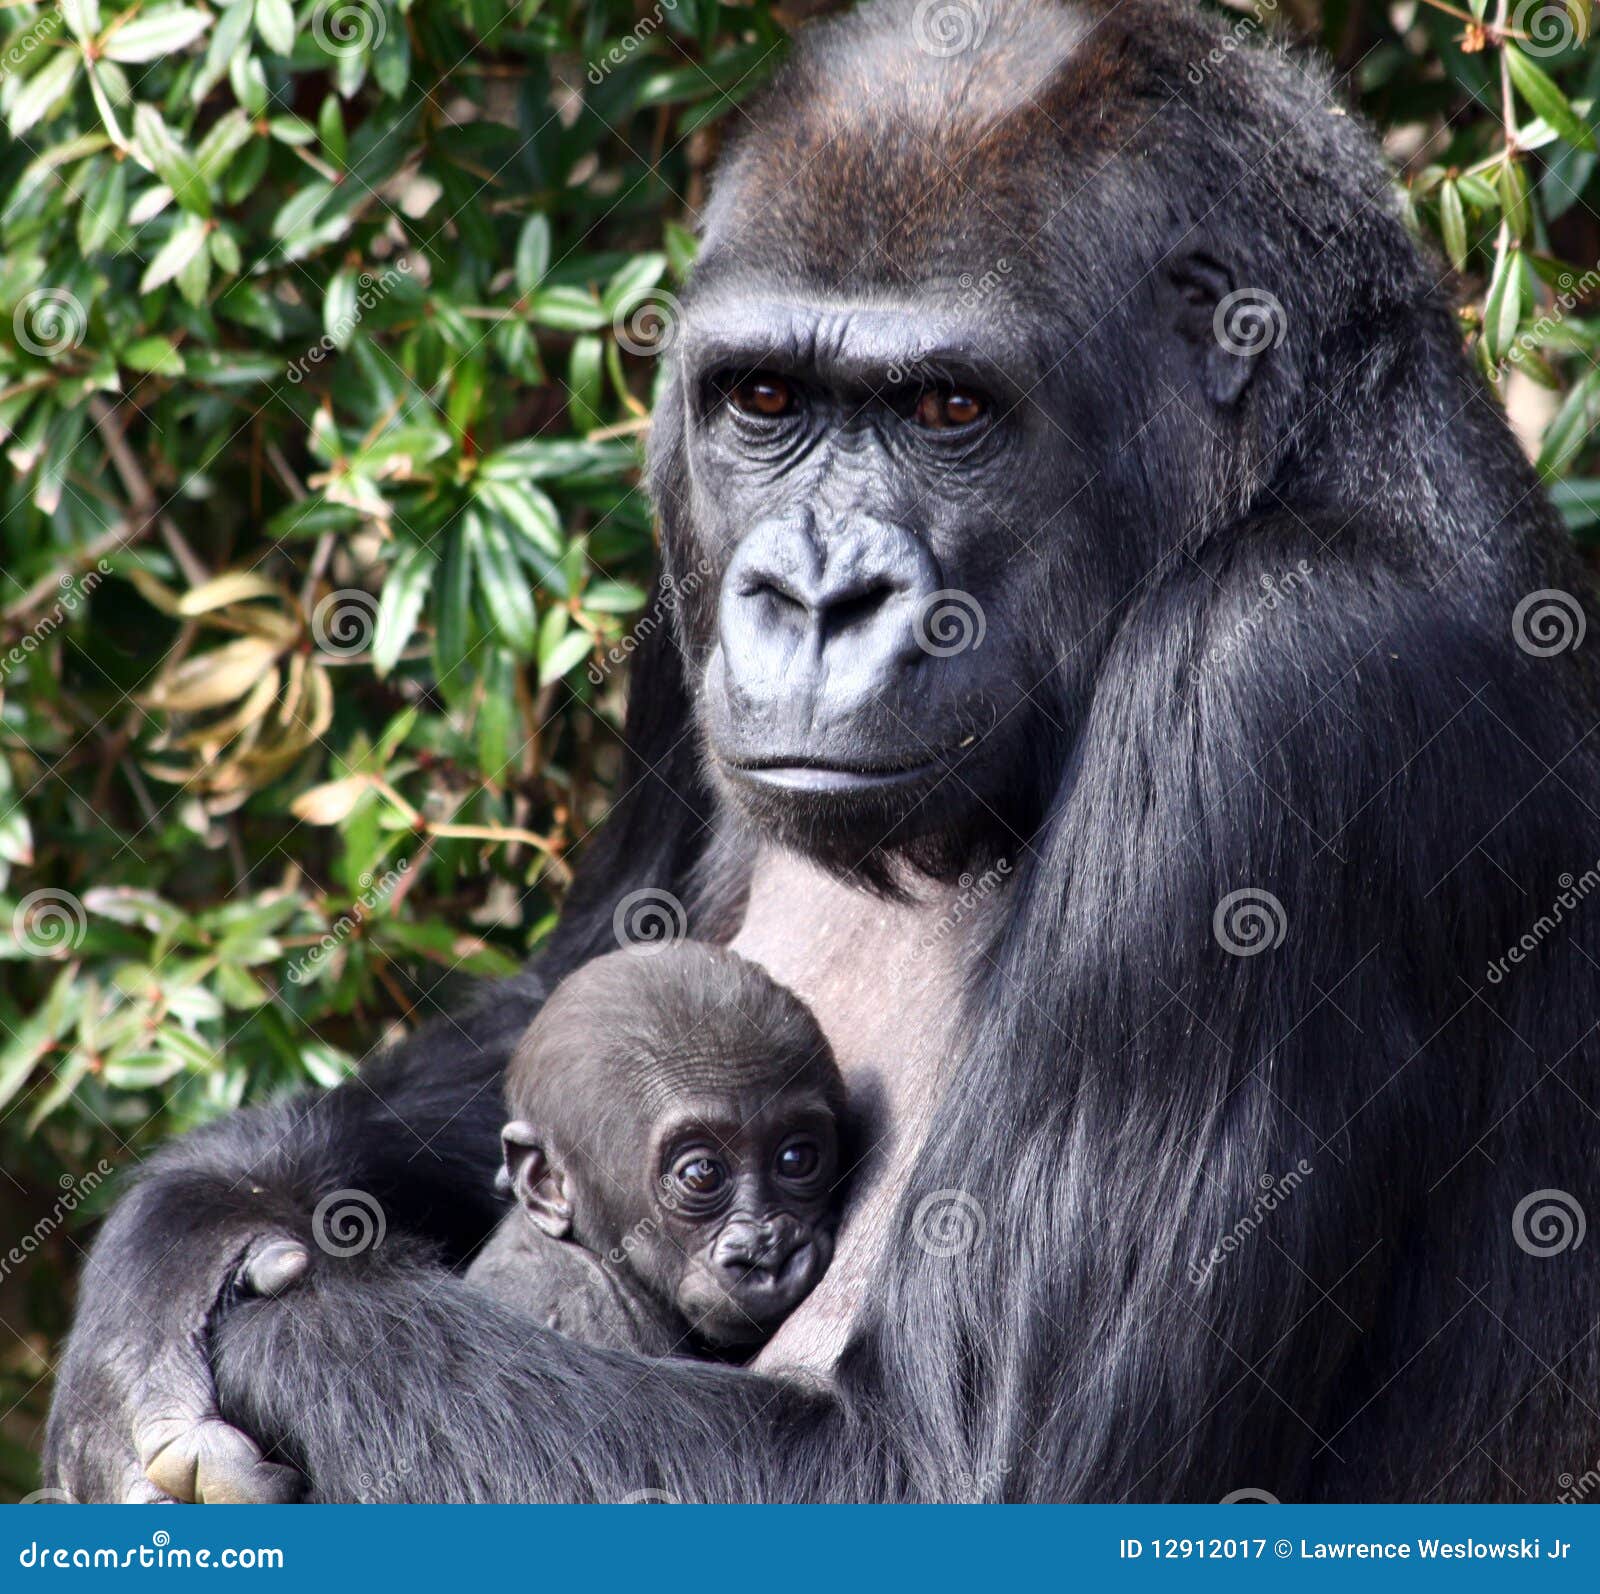 western lowland gorilla holding her newborn baby